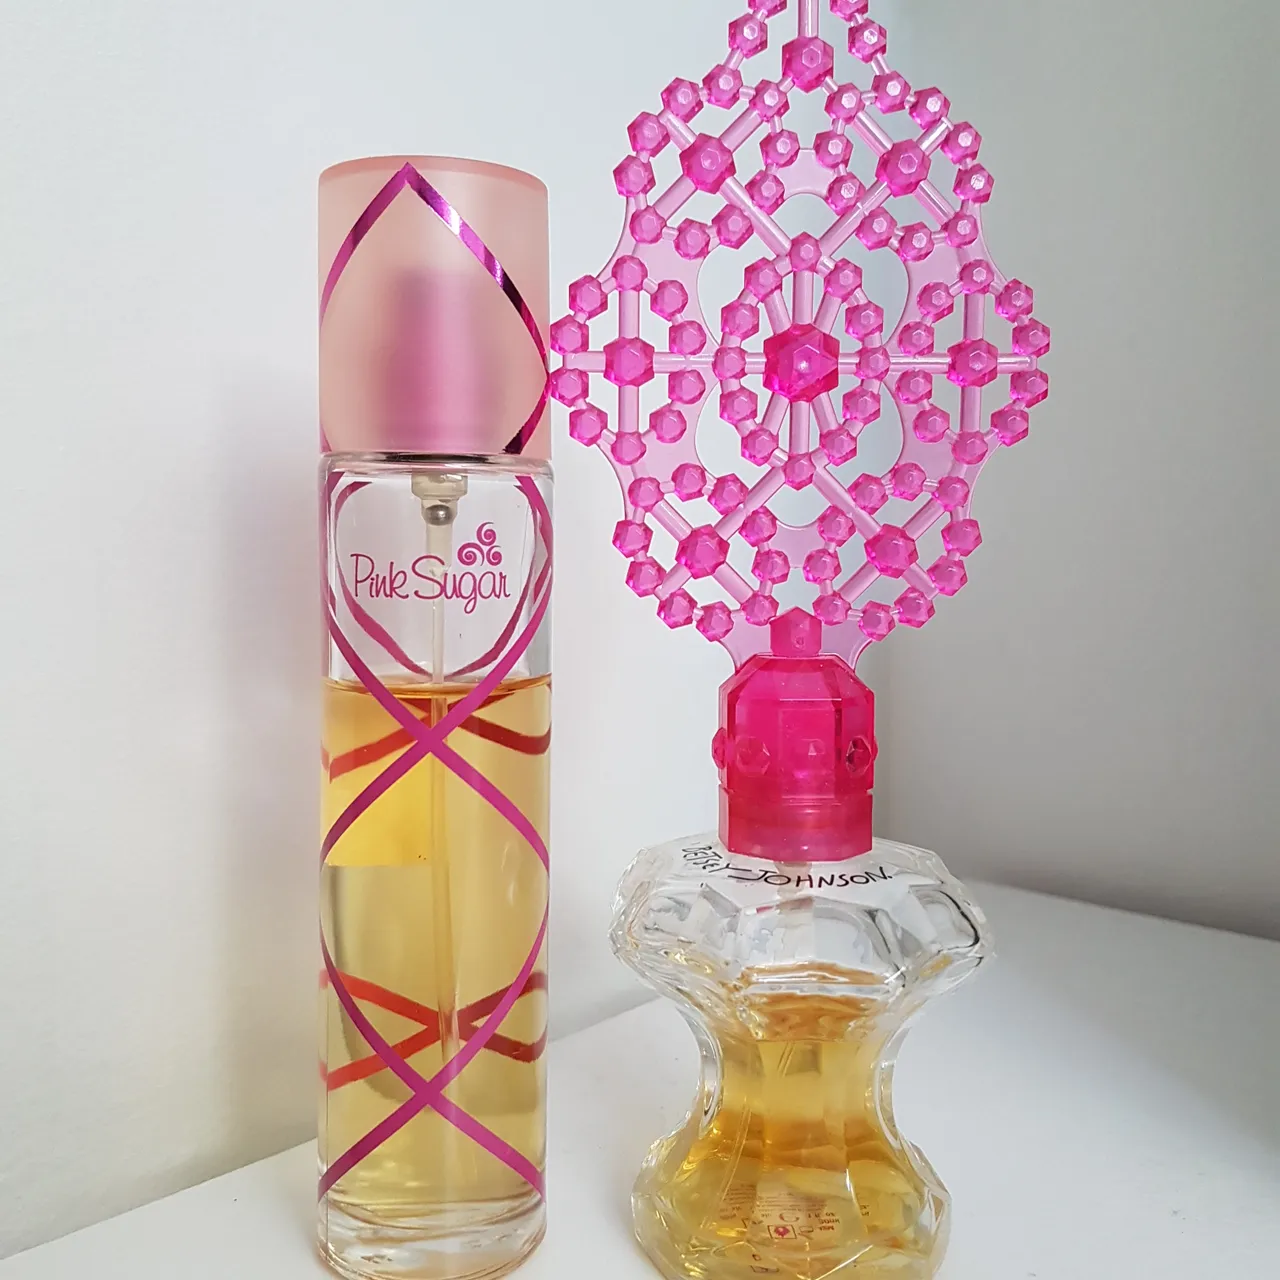 Aquolina Pink Sugar and Betsy Johnson Perfumes photo 1